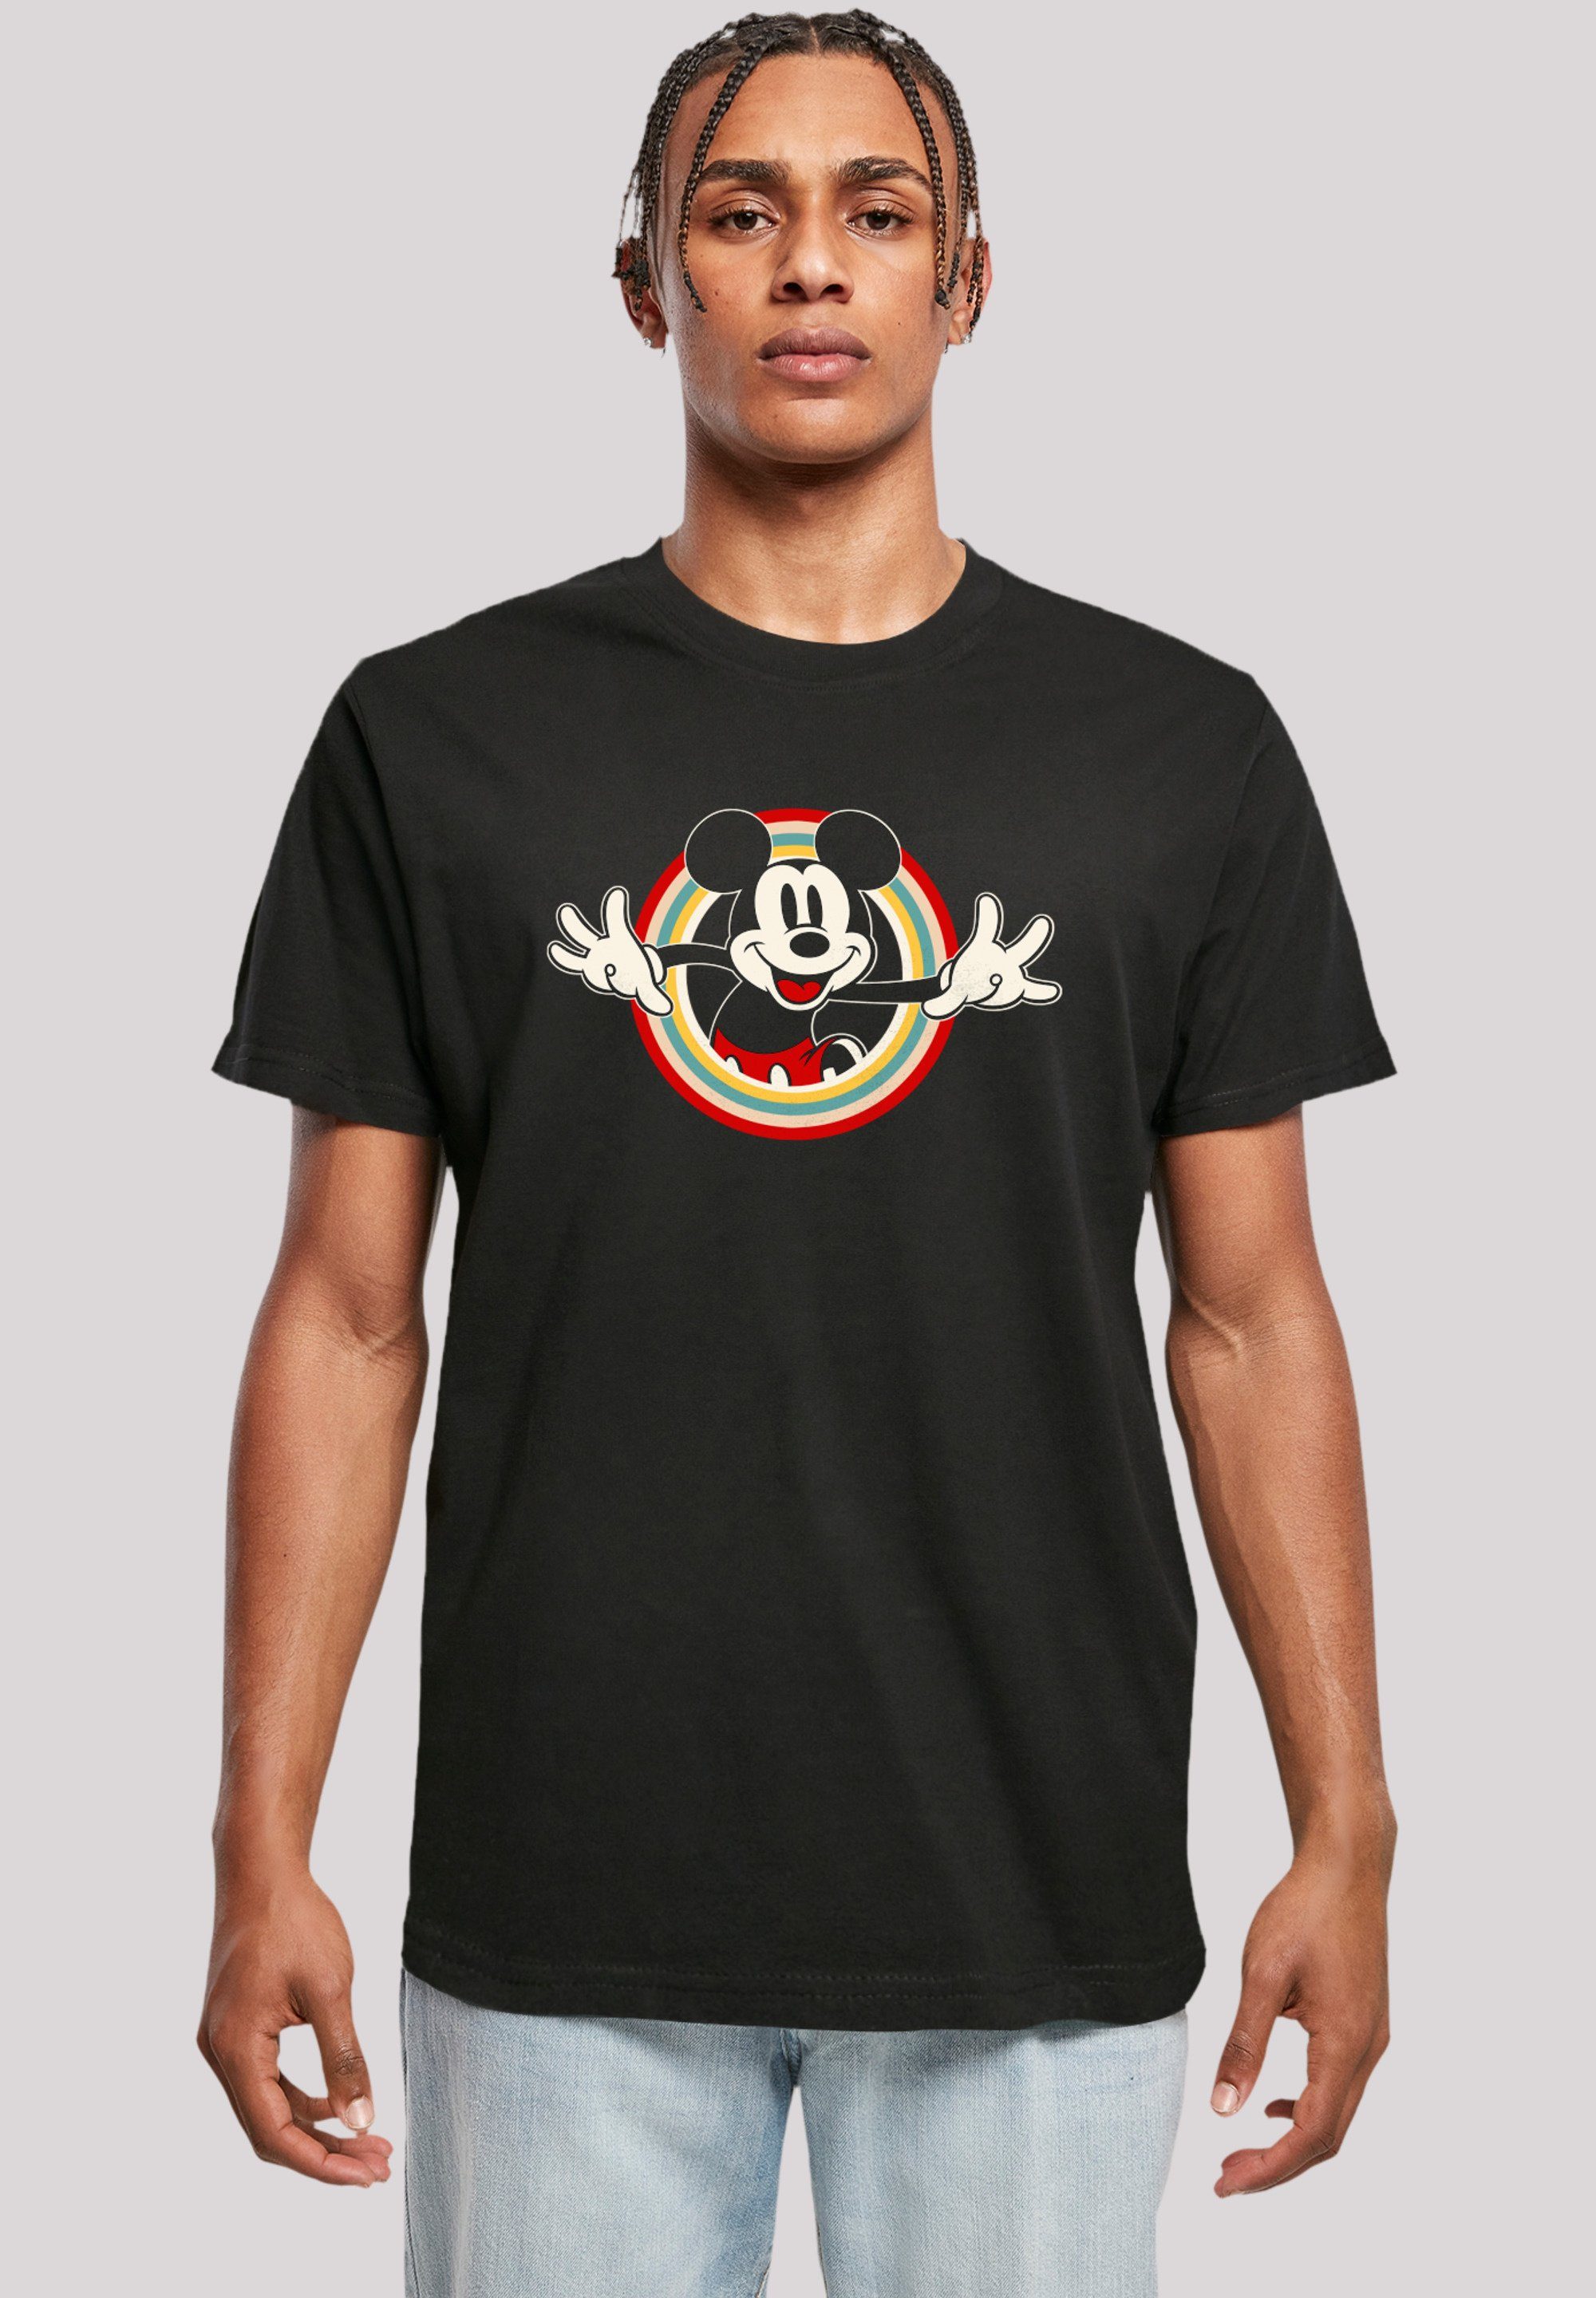 F4NT4STIC T-Shirt Disney Mickey Mouse Hello Premium Qualität, Sehr weicher  Baumwollstoff mit hohem Tragekomfort